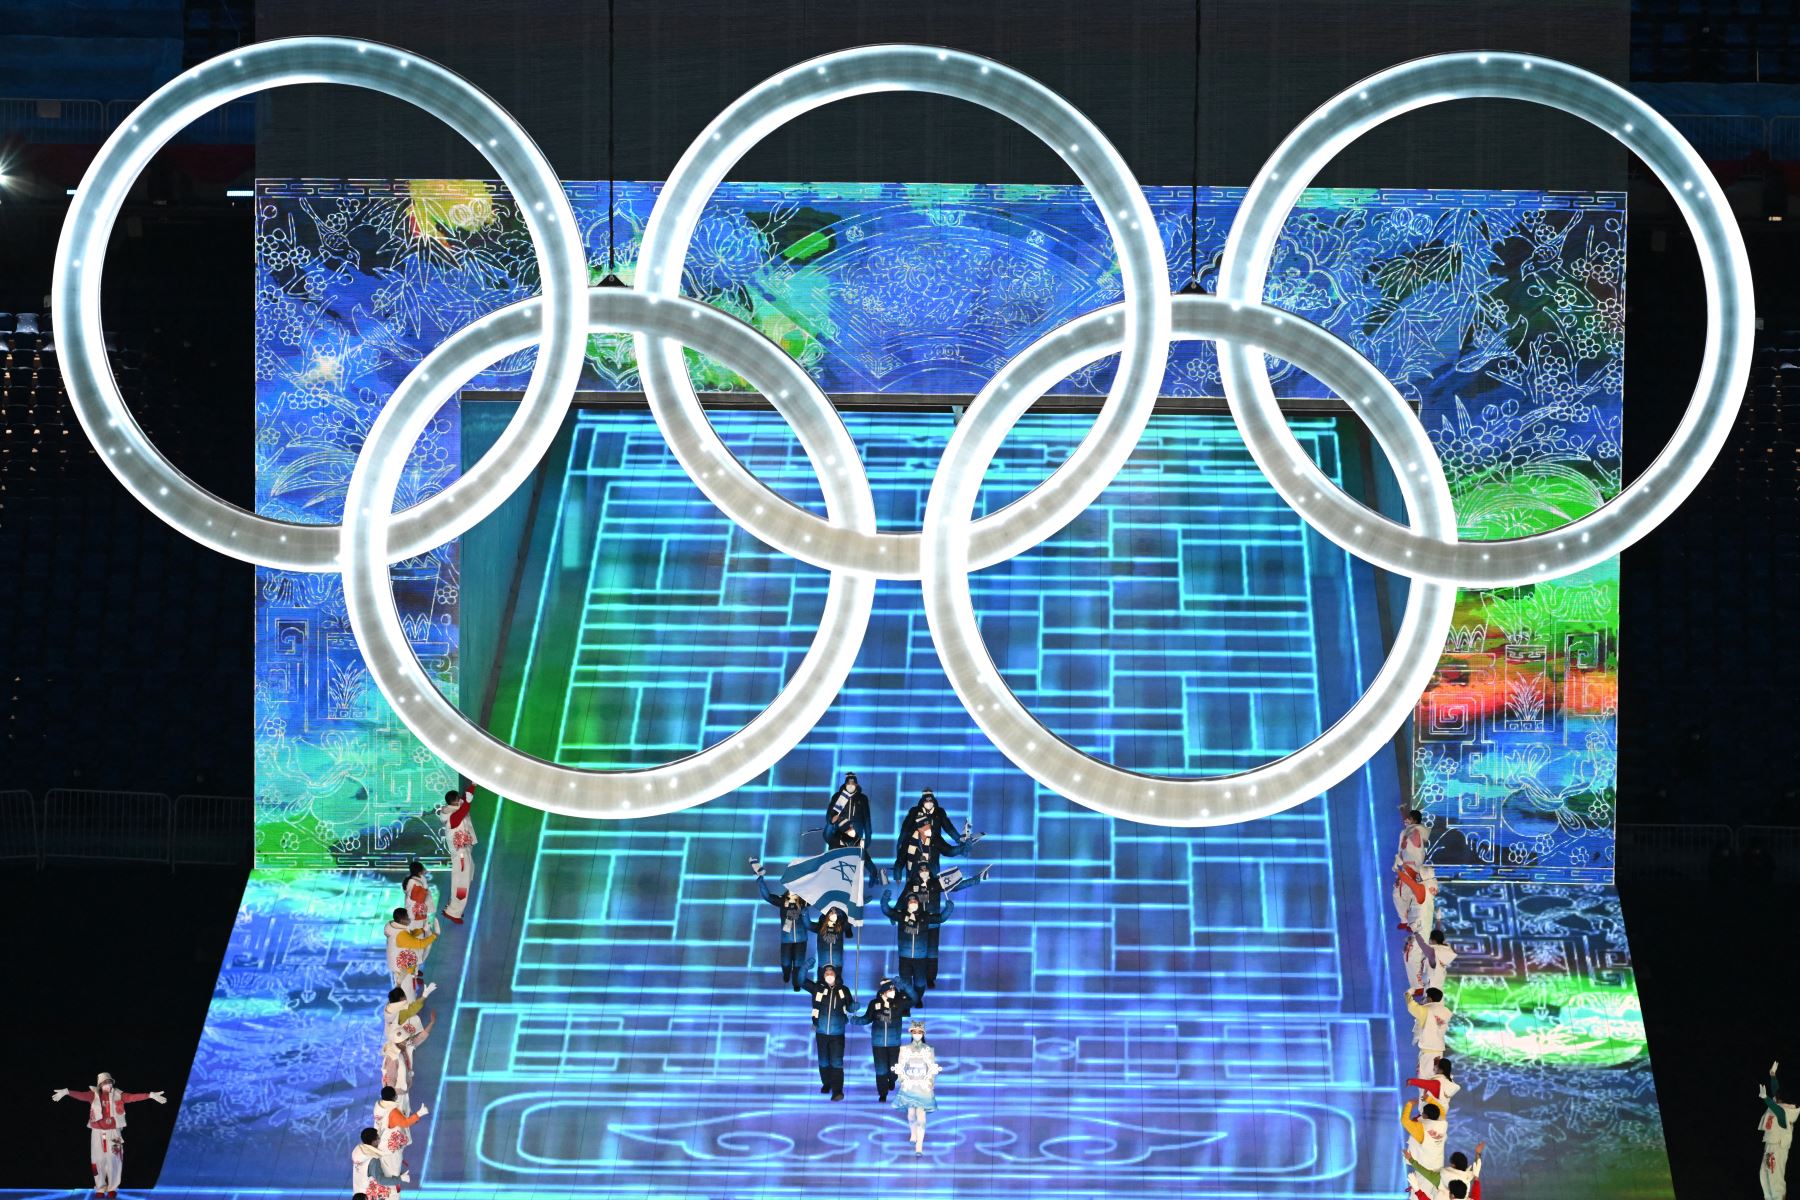 Delegaciones participan en el desfile de atletas durante la ceremonia de apertura de los Juegos Olímpicos de Invierno de Beijing 2022. Foto: AFP